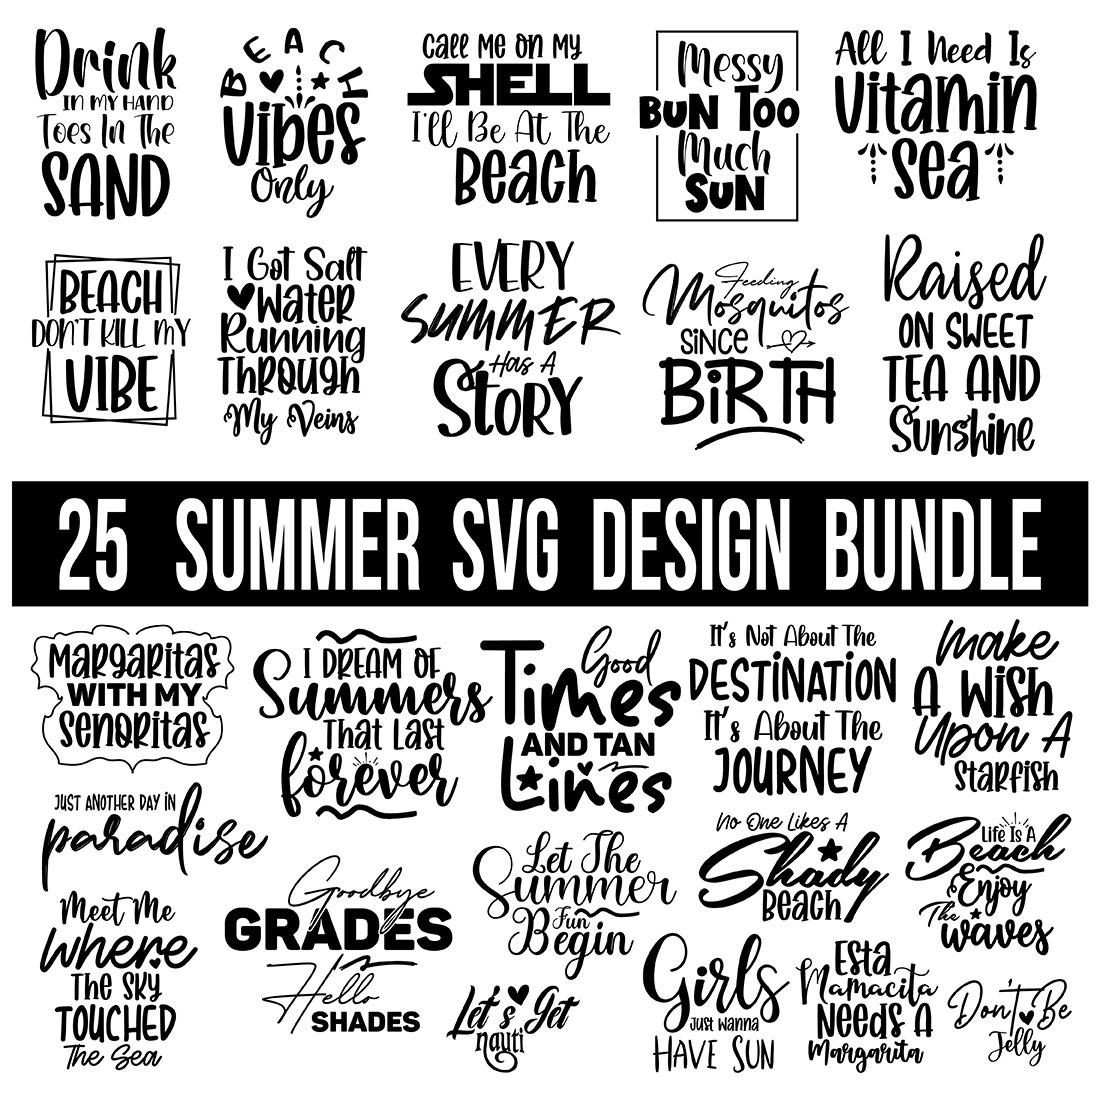 Summer SVG Bundle cover image.